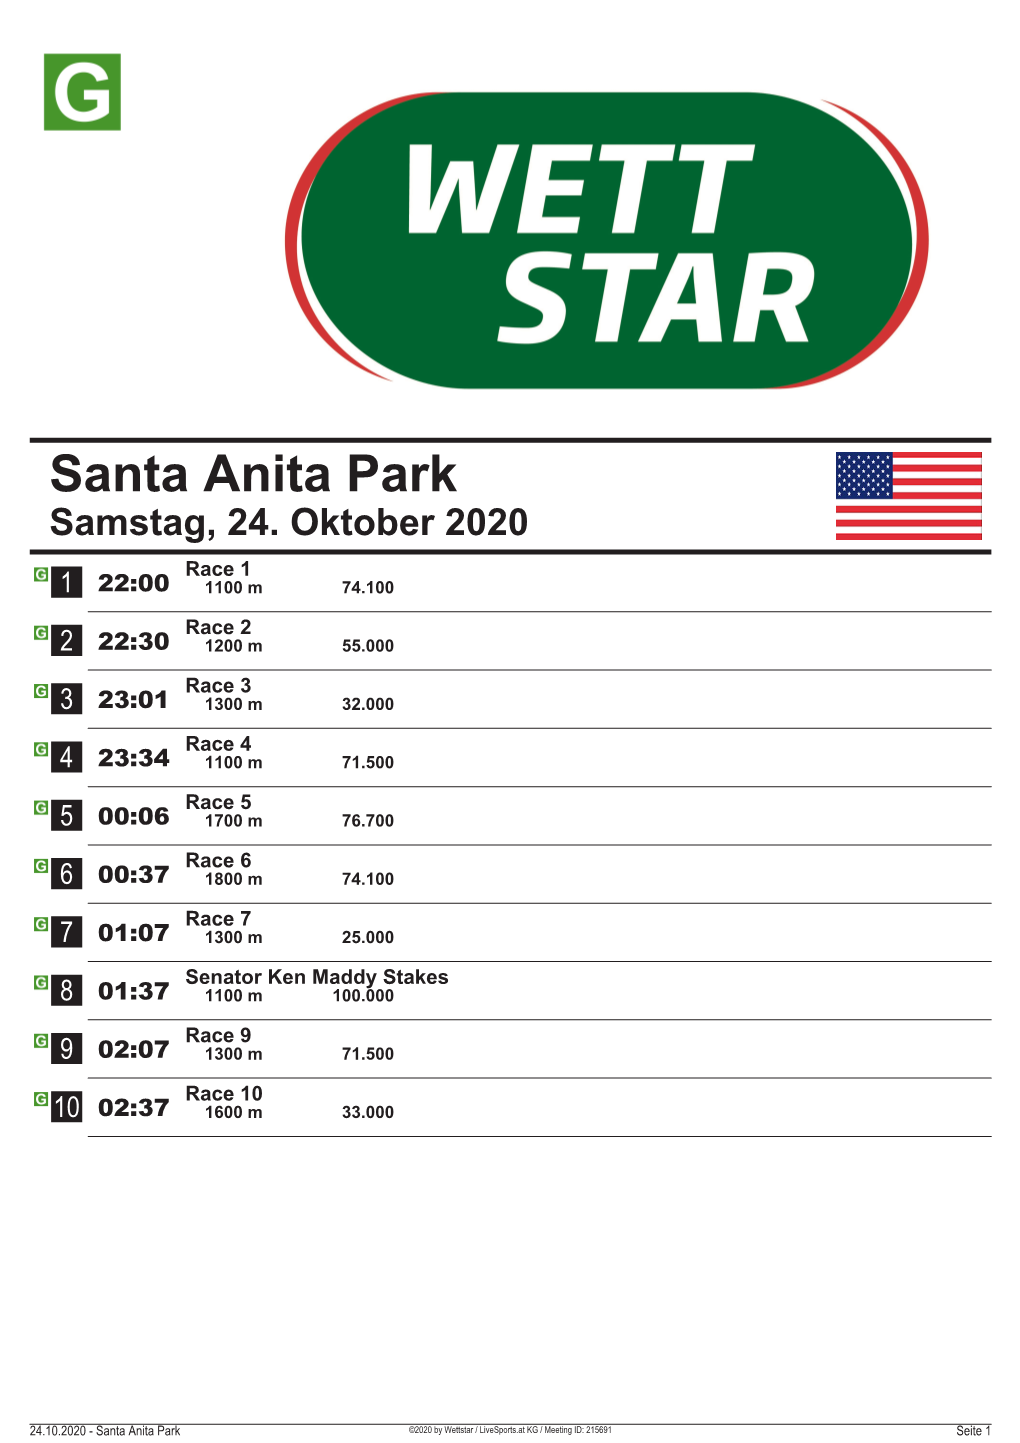 Santa Anita Park Samstag, 24